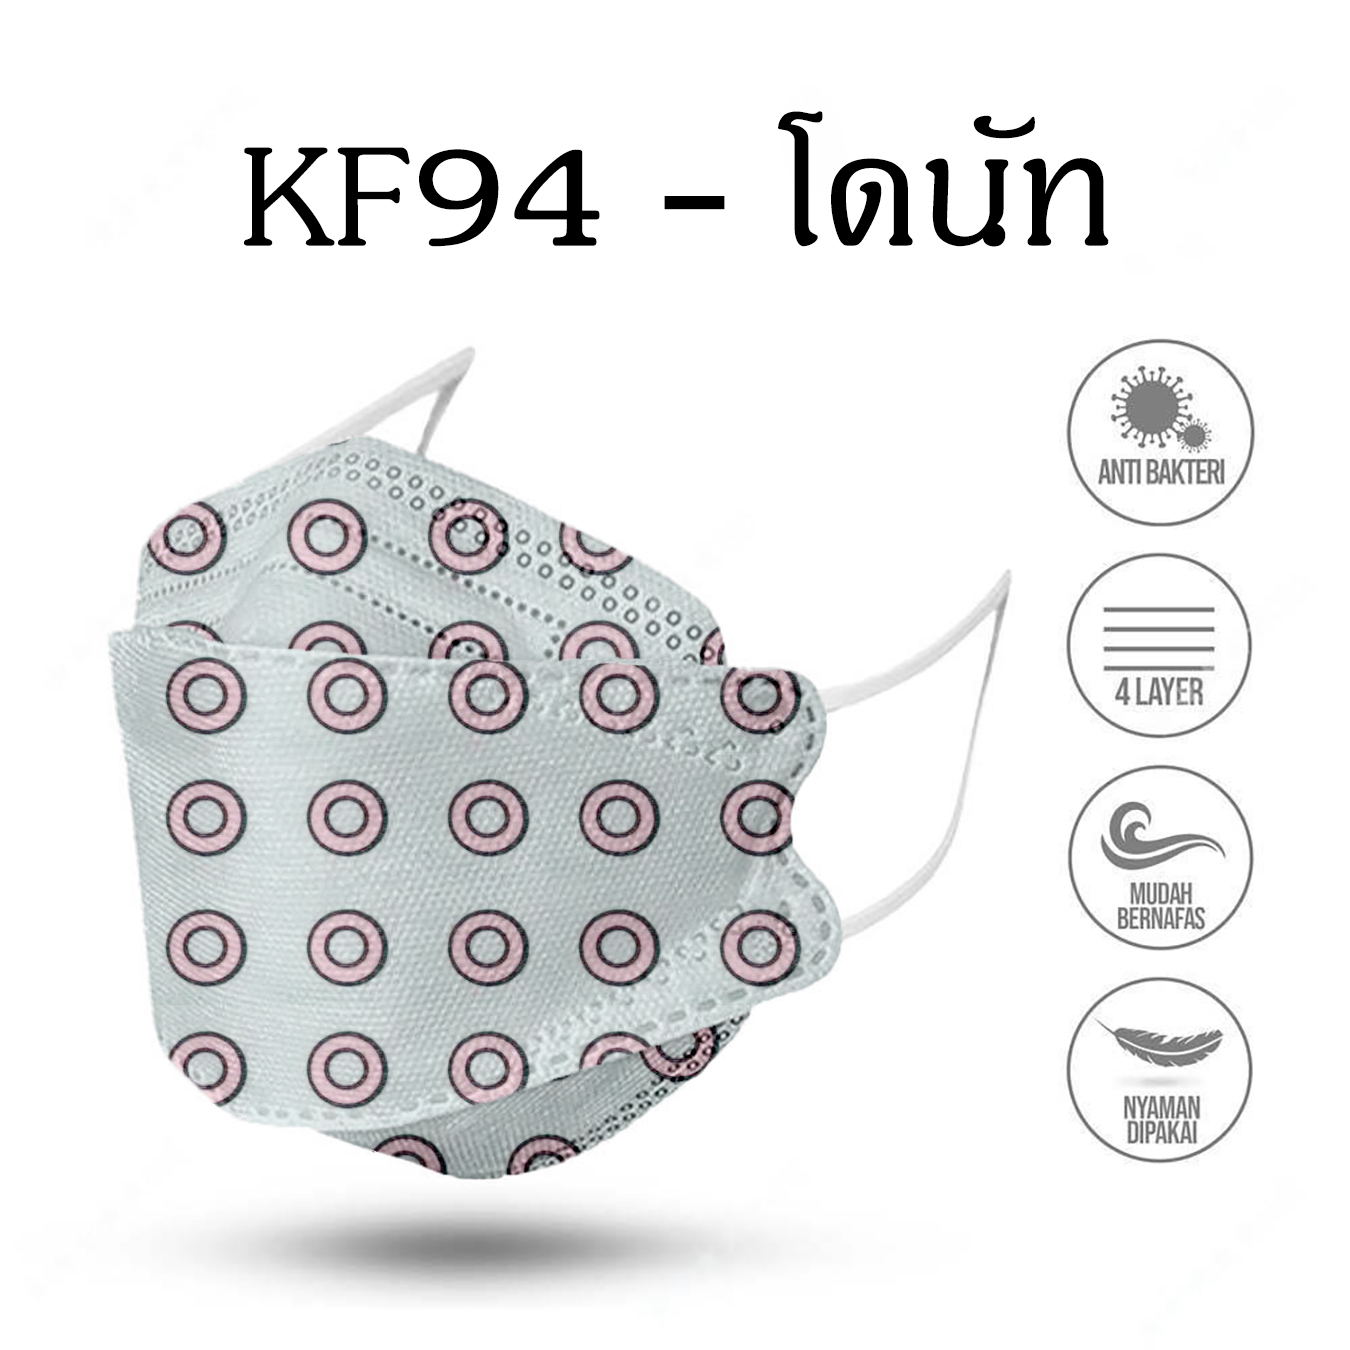 (PC10)หน้ากากกันฝุ่น หน้ากากอนามัยKF94 ป้องกันเชื้อโรค PM2.5 ทรงเกาหลี หน้ากากอนามัย ผู้ใหญ่ รุ่นเกาหลี KF94 แมสเกาหลี